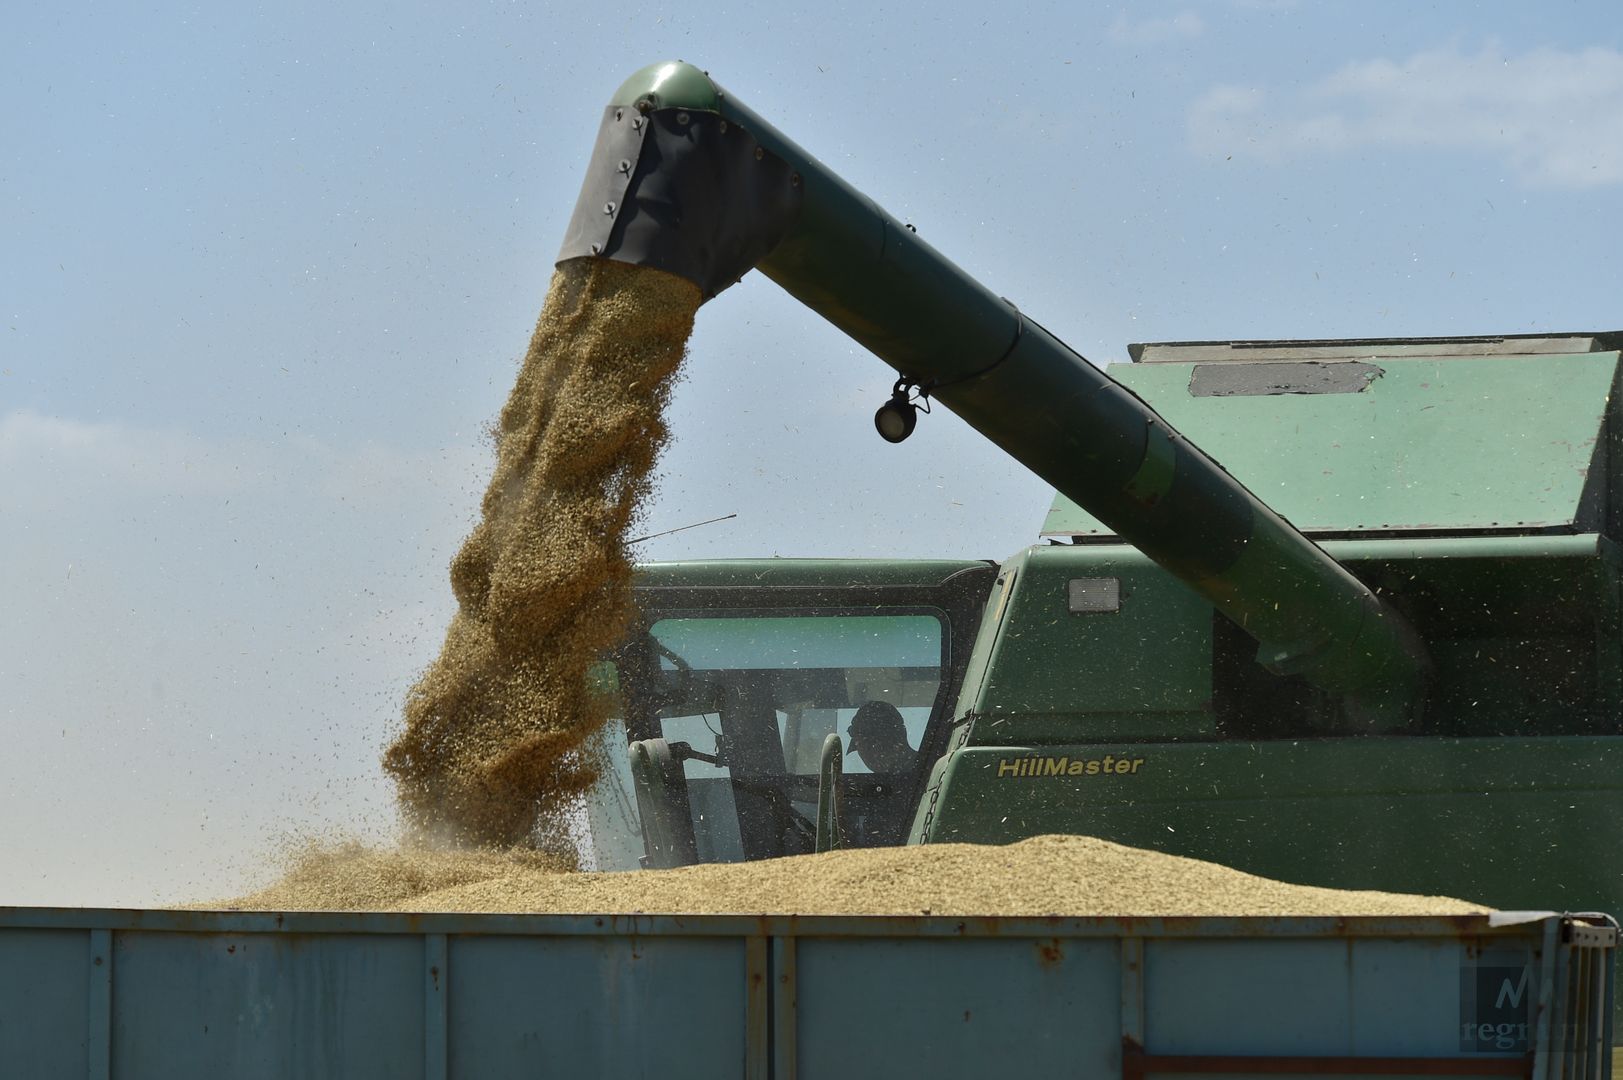 Уборка зерновых в Мелитопольском районе